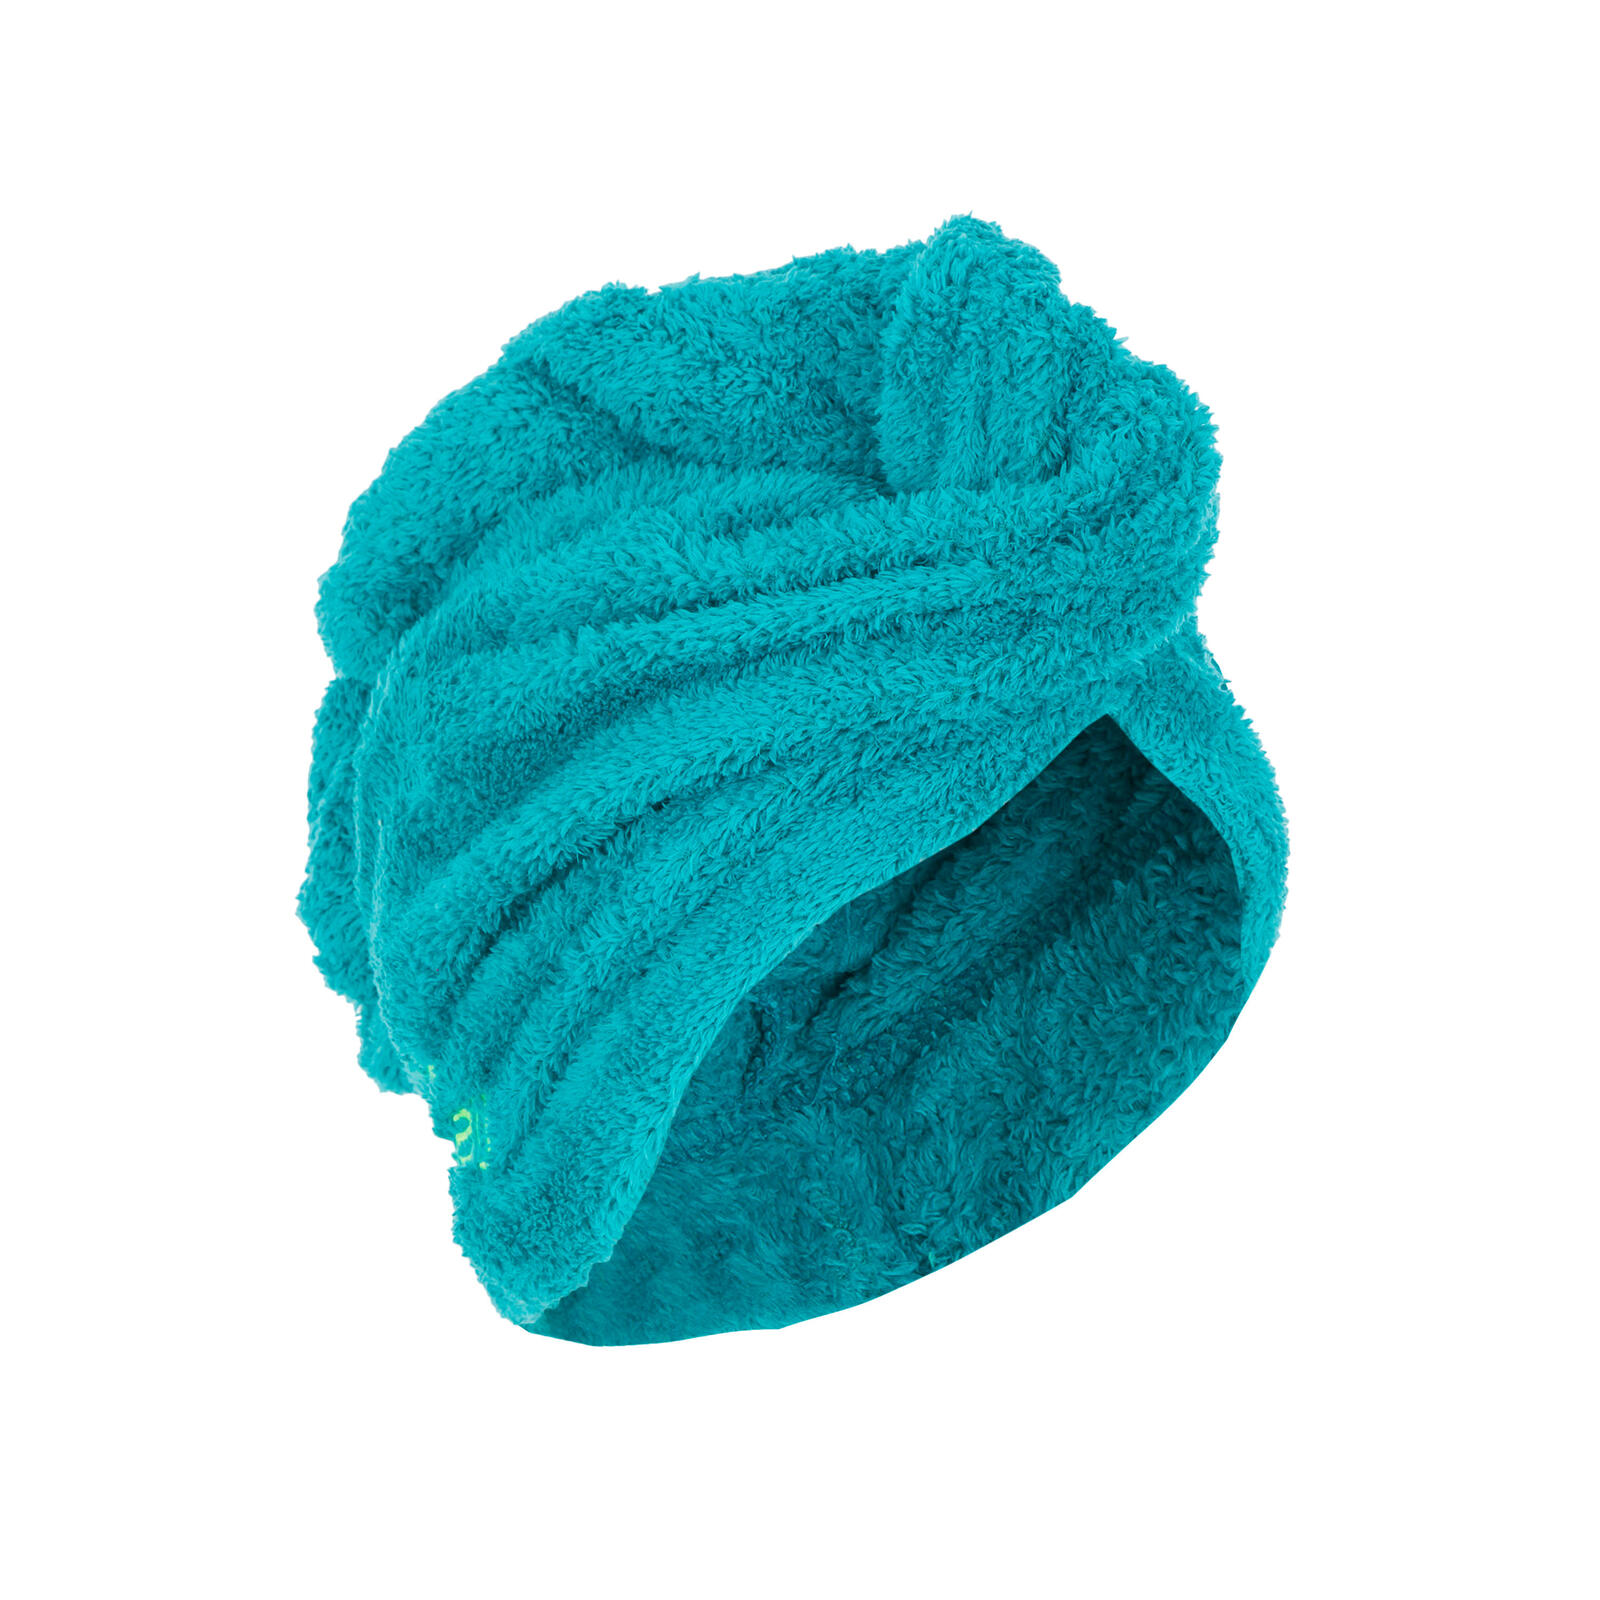 Microfibre hair towel